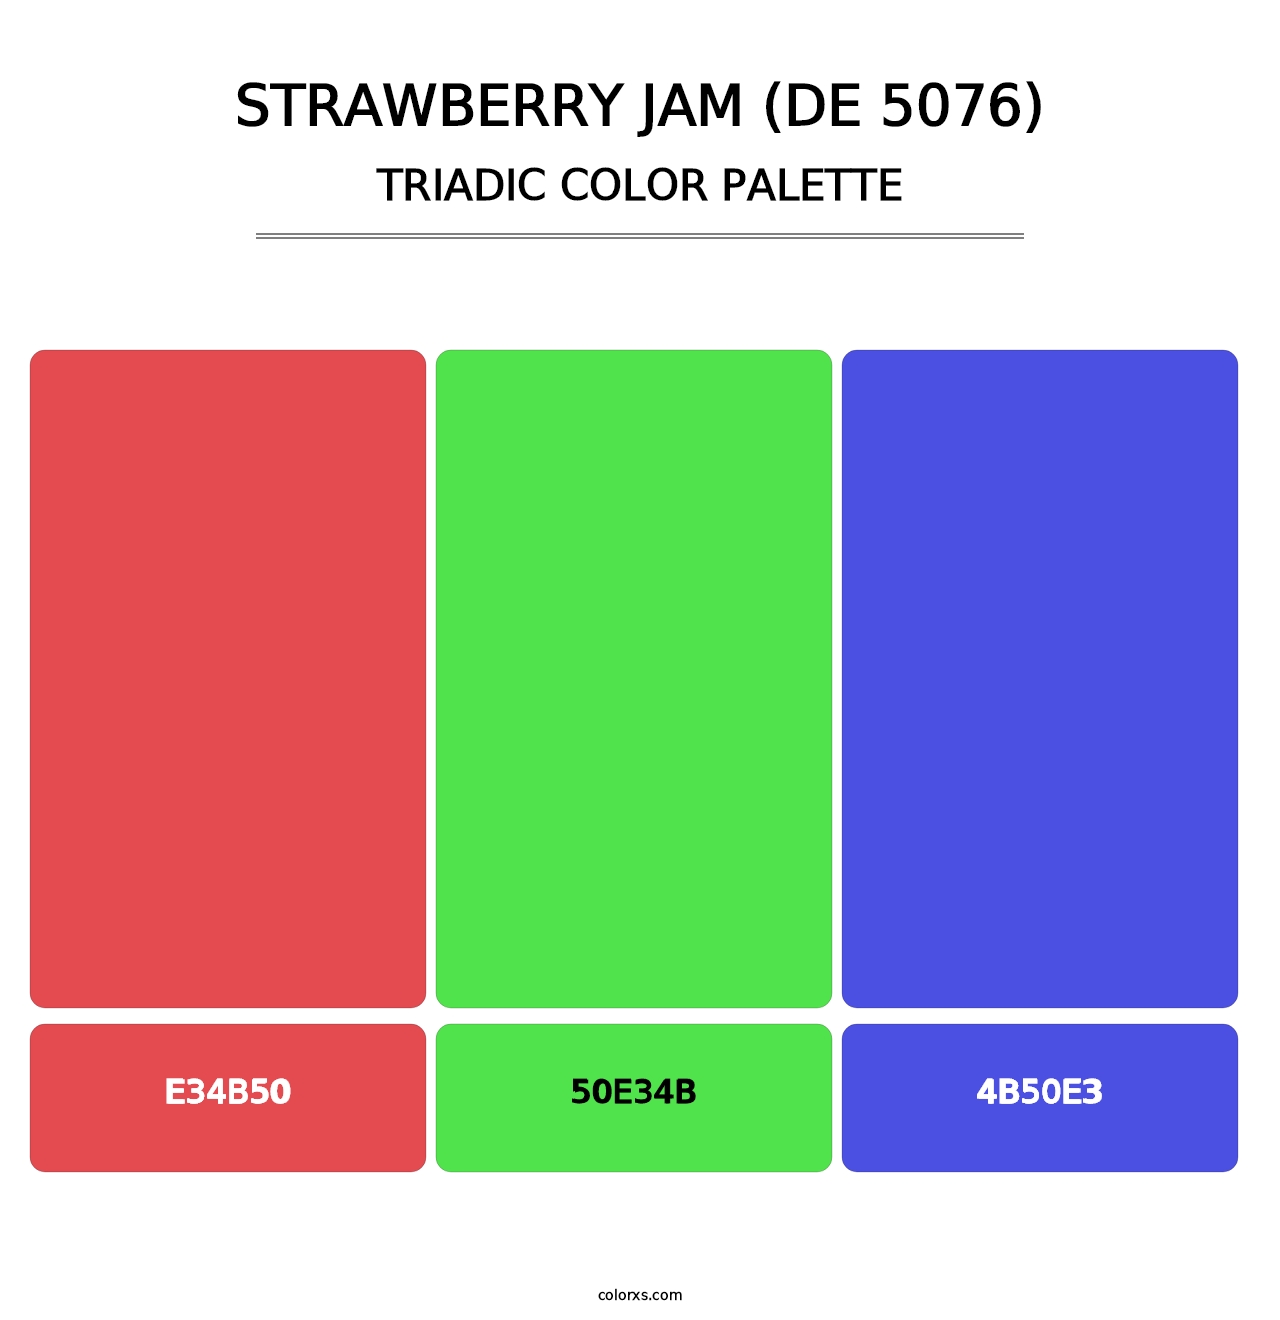 Strawberry Jam (DE 5076) - Triadic Color Palette